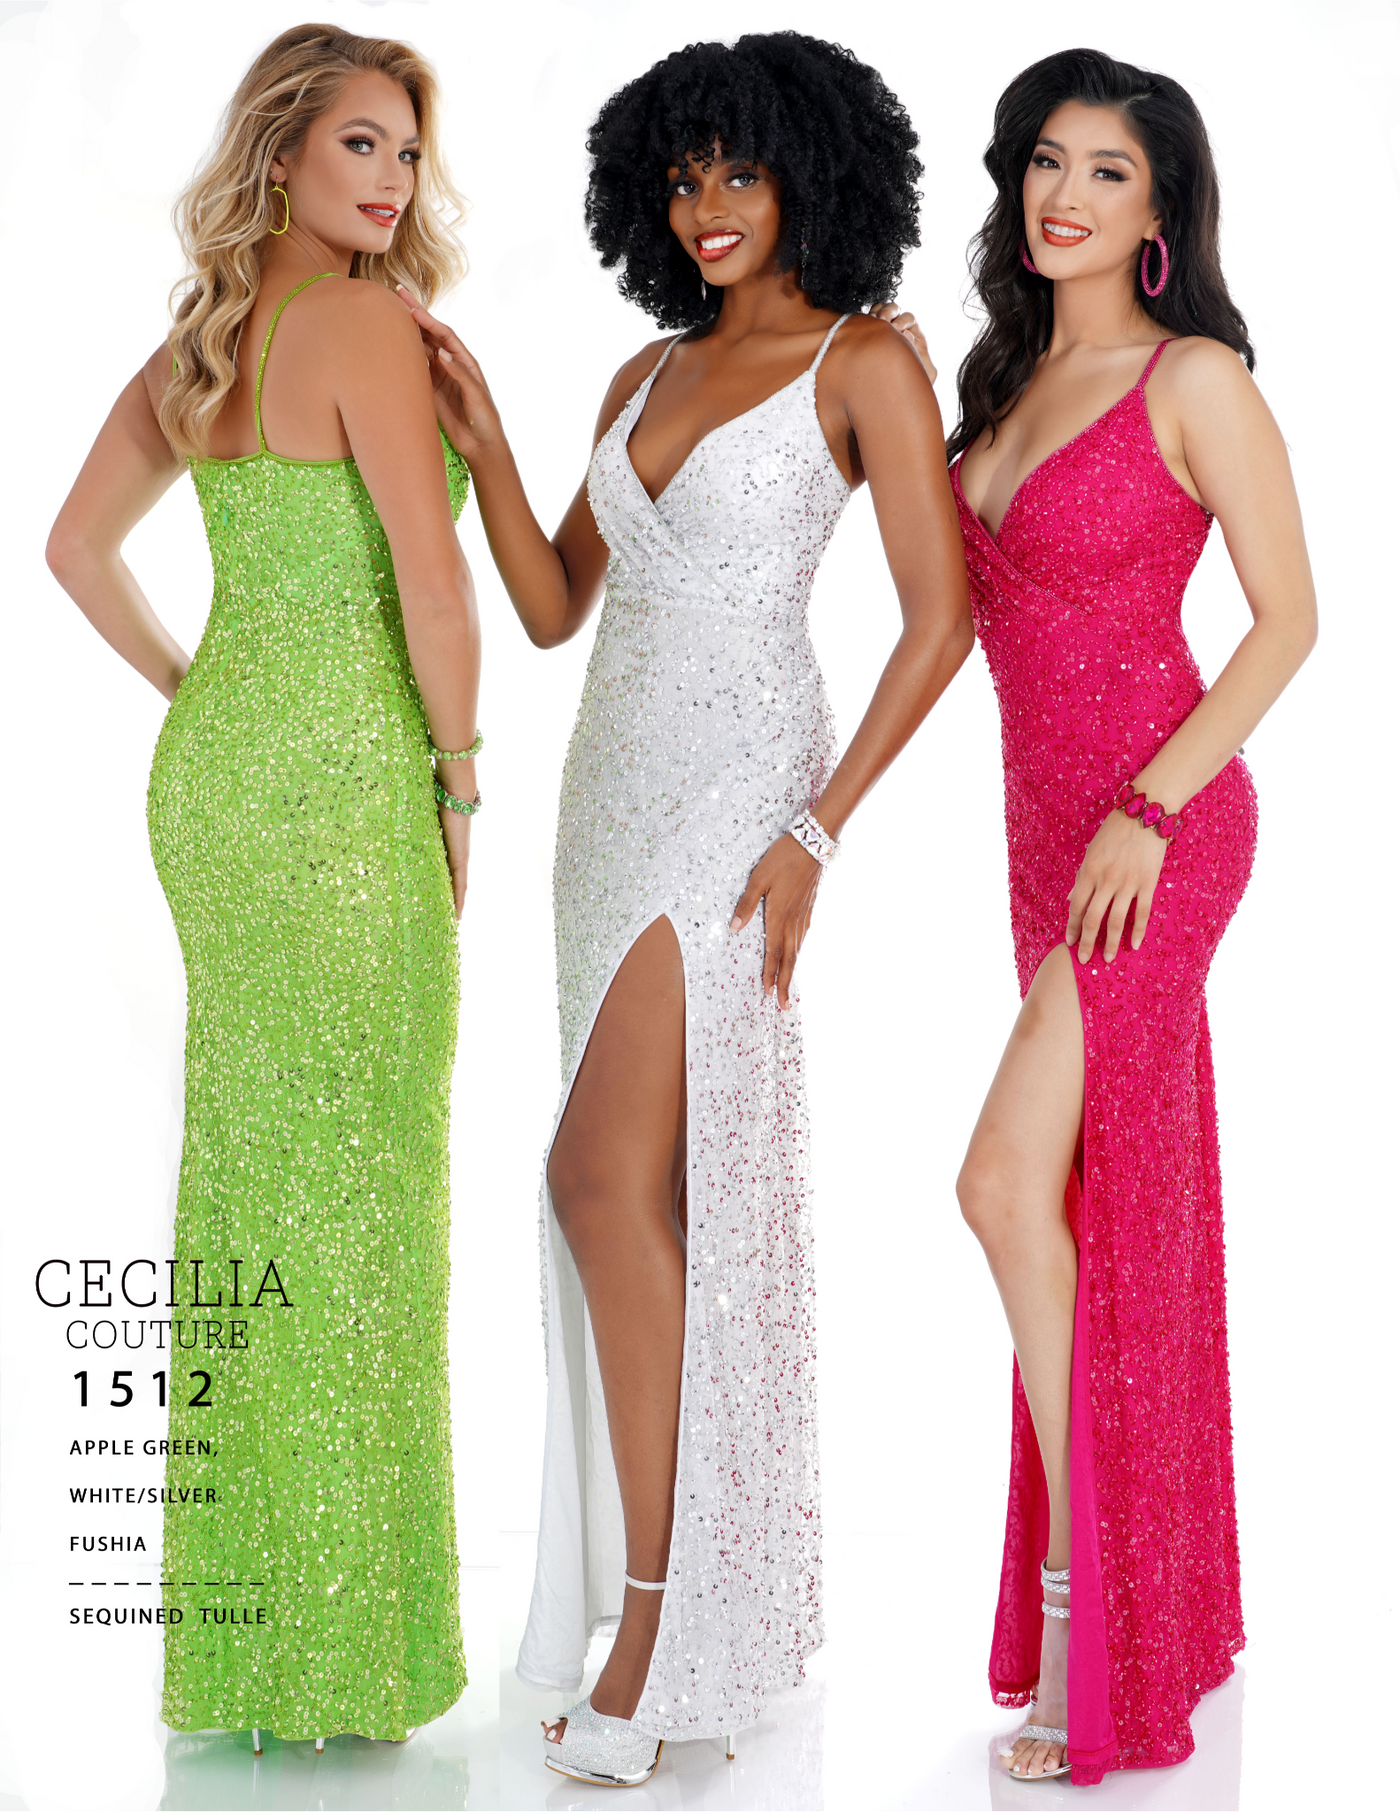 Cecilia Couture 1512 APPLE GREEN Prom Dress